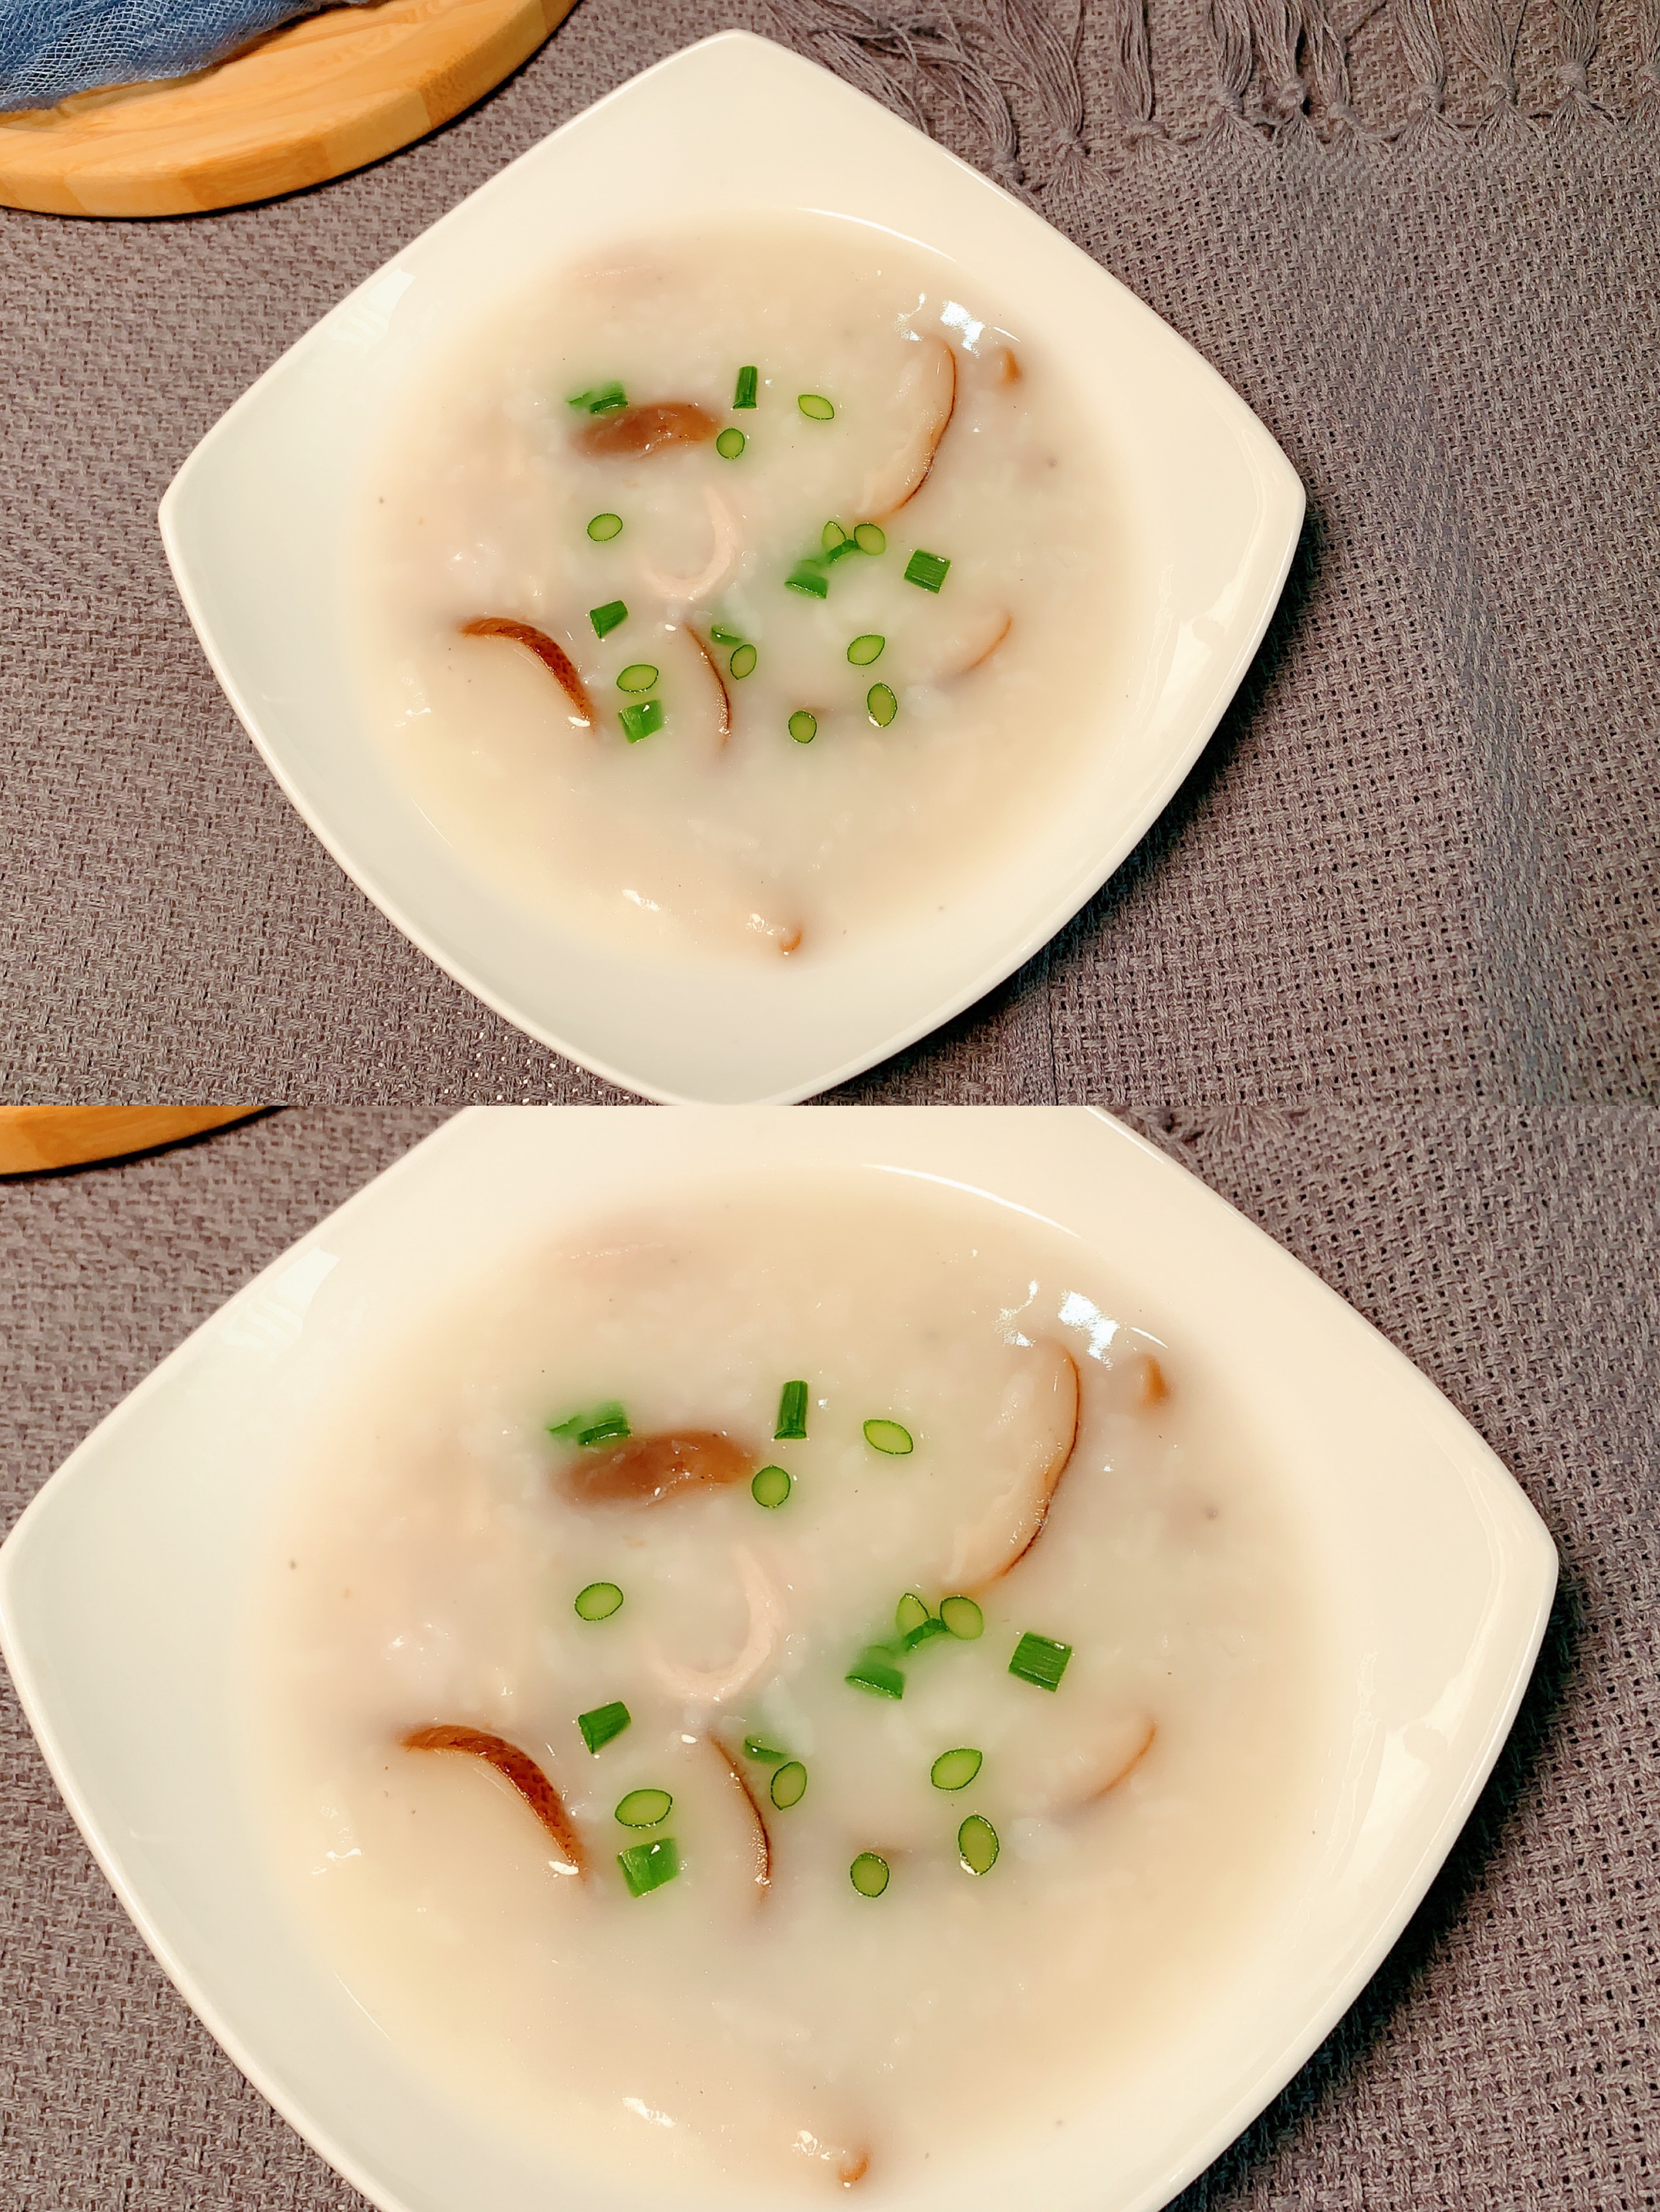 香菇瘦肉粥的做法